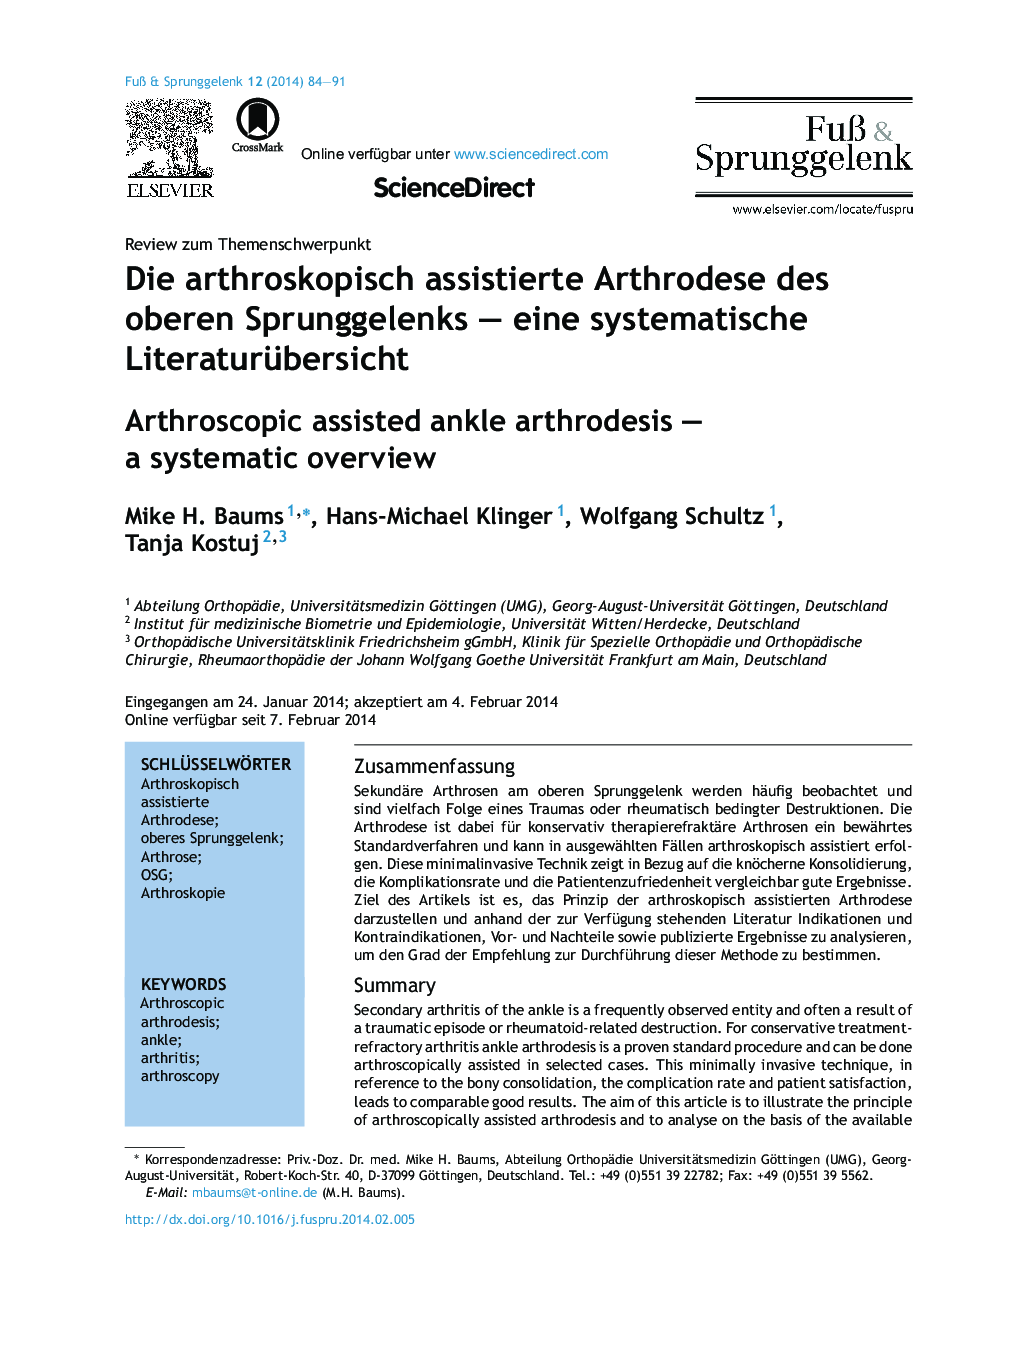 Die arthroskopisch assistierte Arthrodese des oberen Sprunggelenks - eine systematische Literaturübersicht